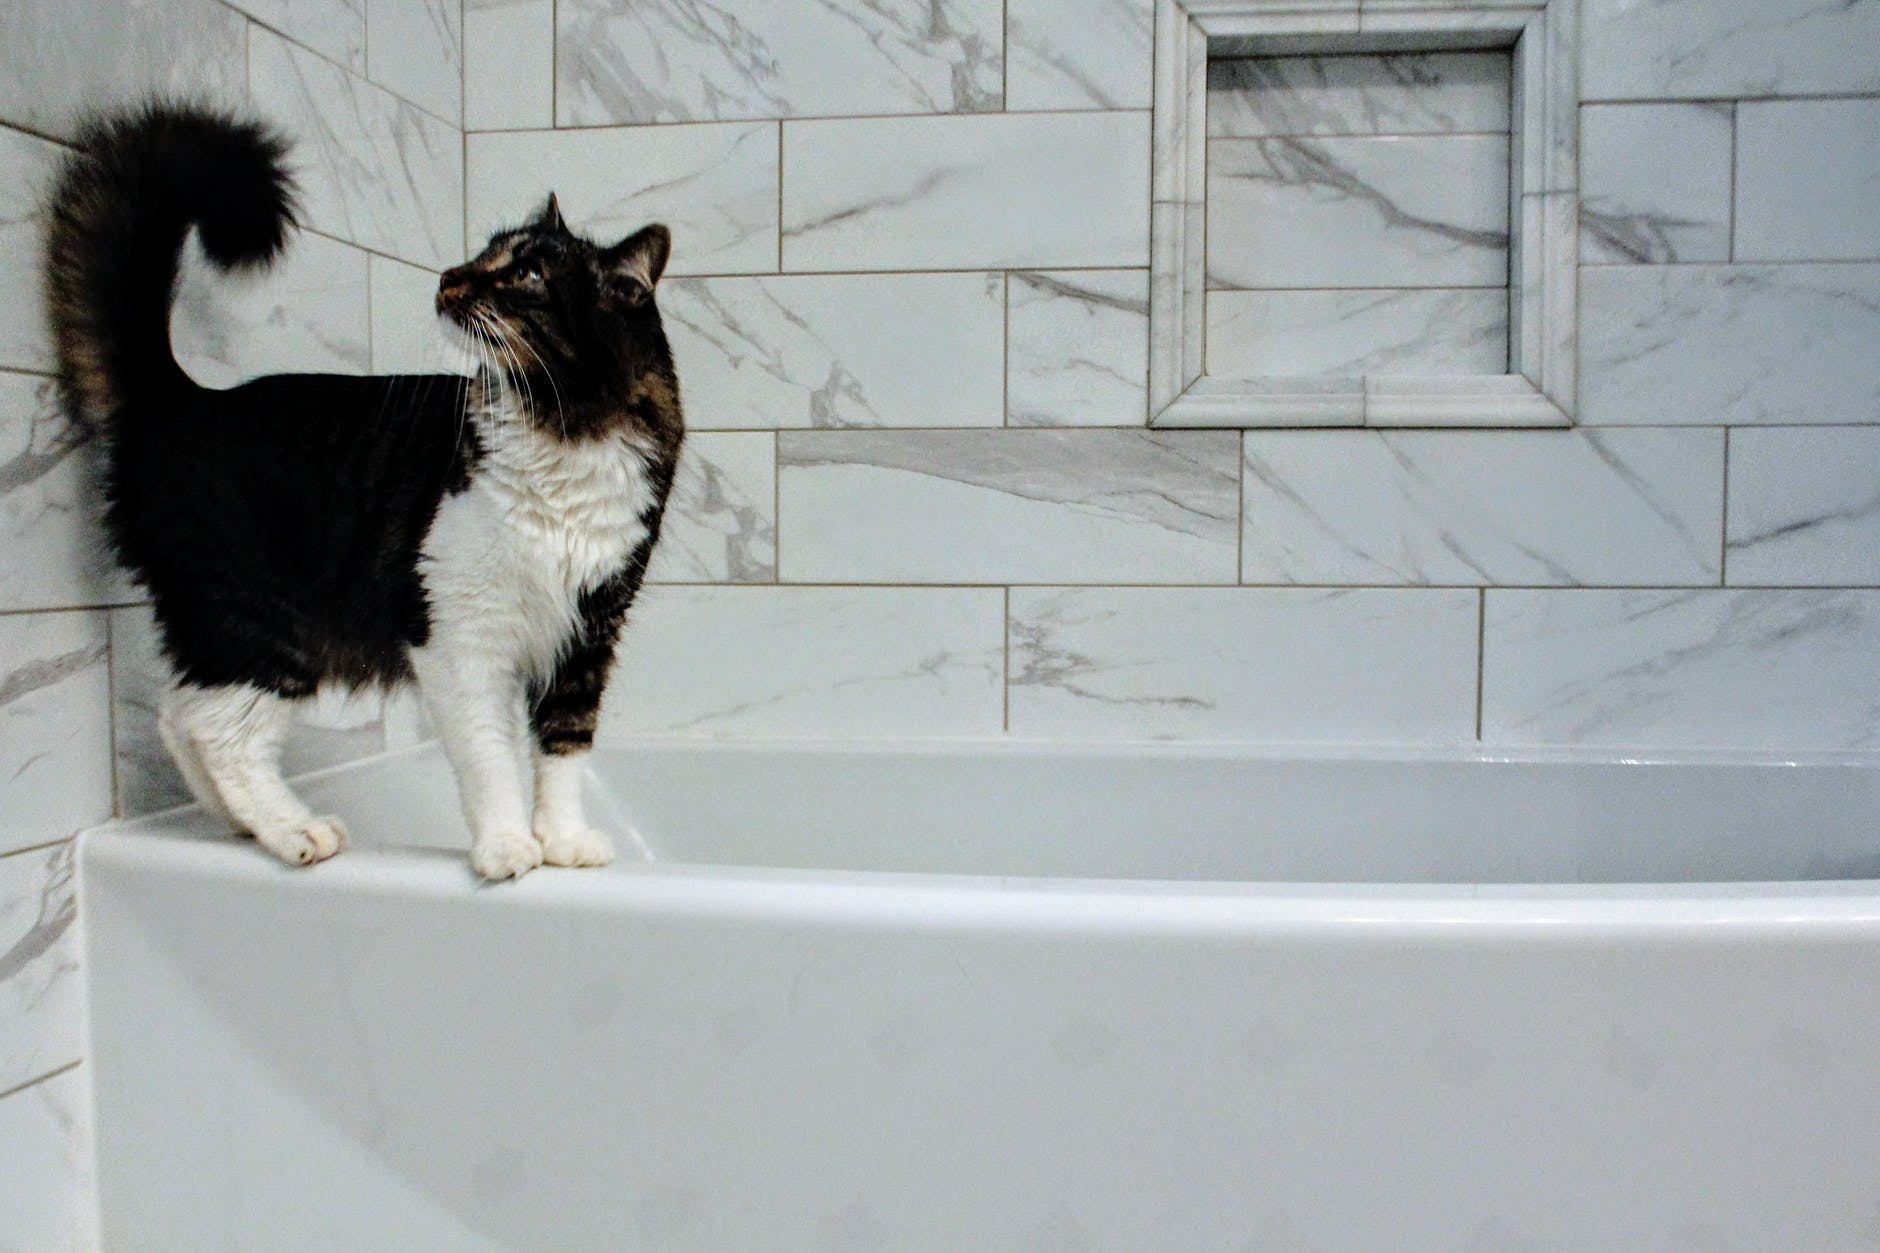 Mas, afinal, como cuidar da higiene felina? Fonte: Pexels.